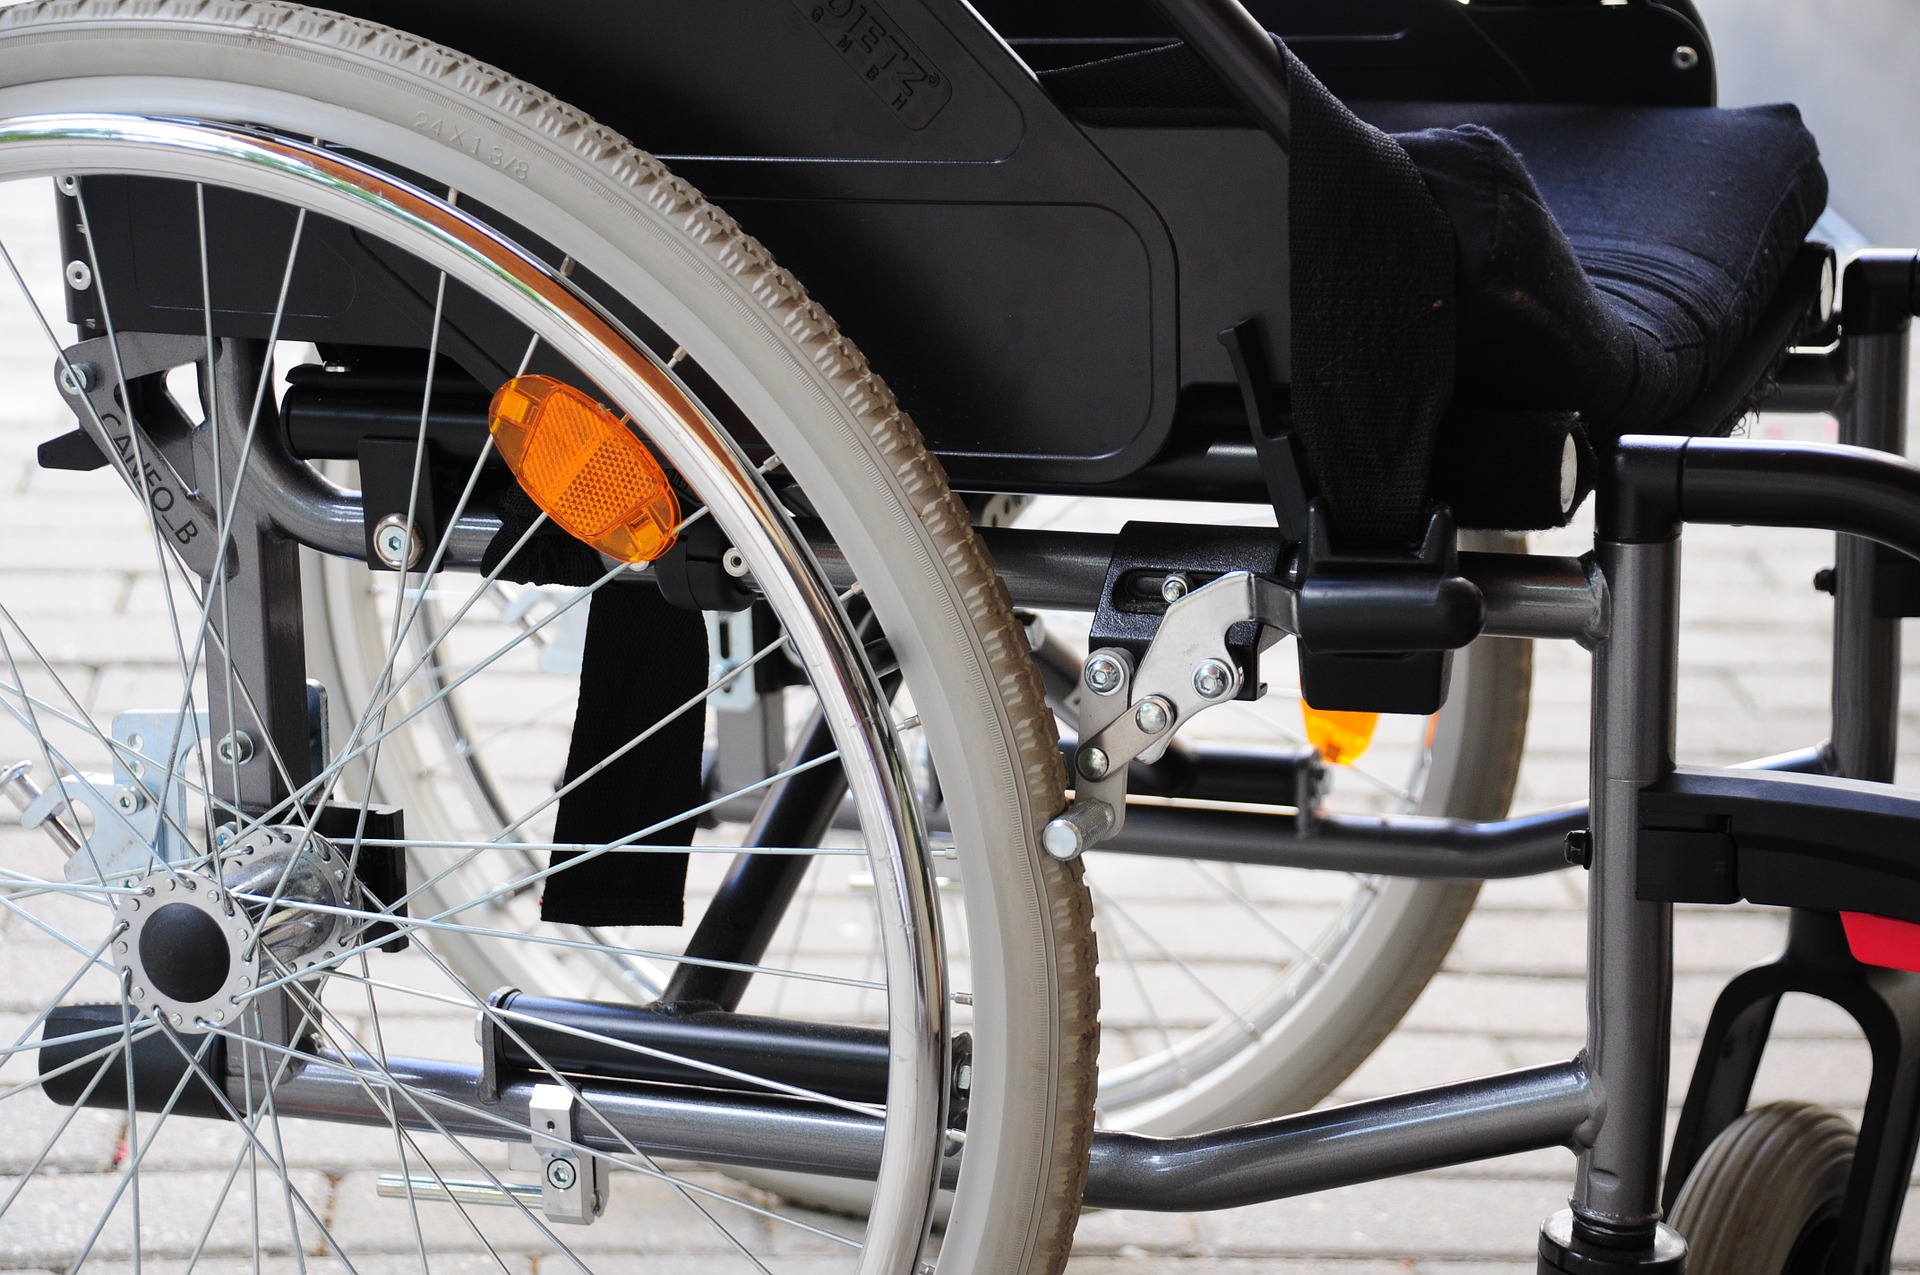 Selon une étude, l'inclusion des personnes handicapées dans le monde professionnel est "insuffisante"